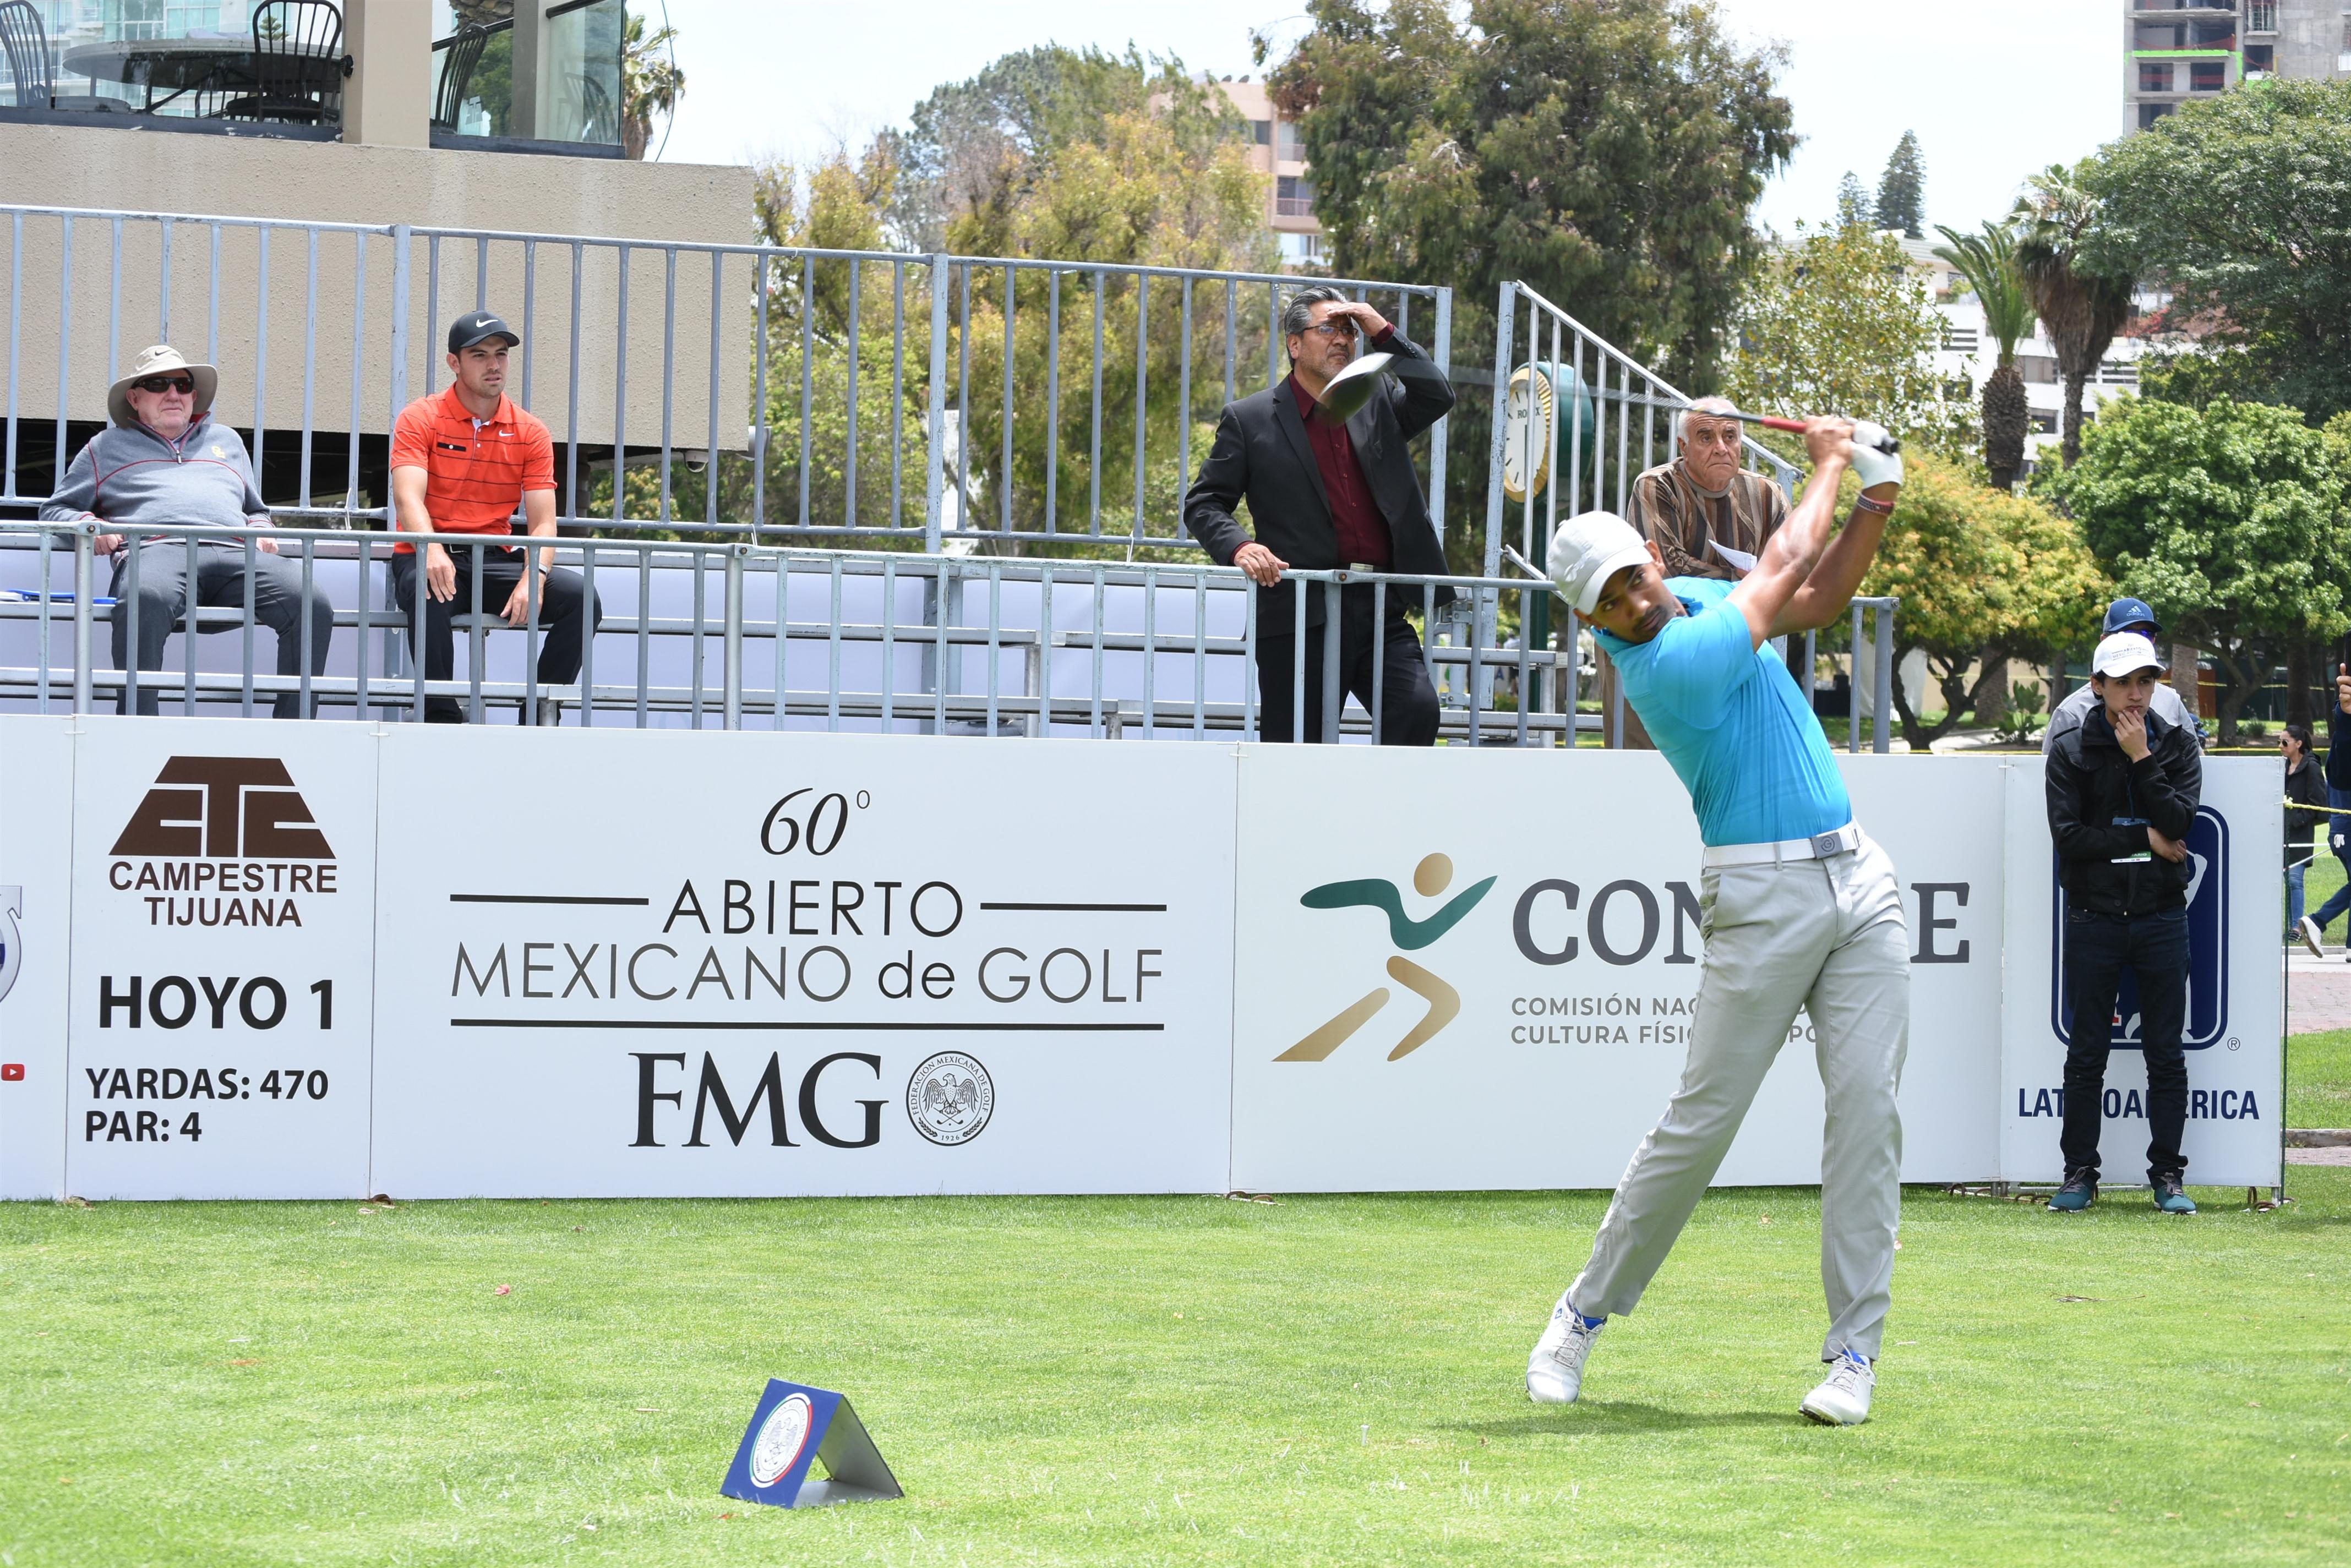 60 Abierto Mexicano de Golf 2019 en Club Campestre Tijuana .(2-4)